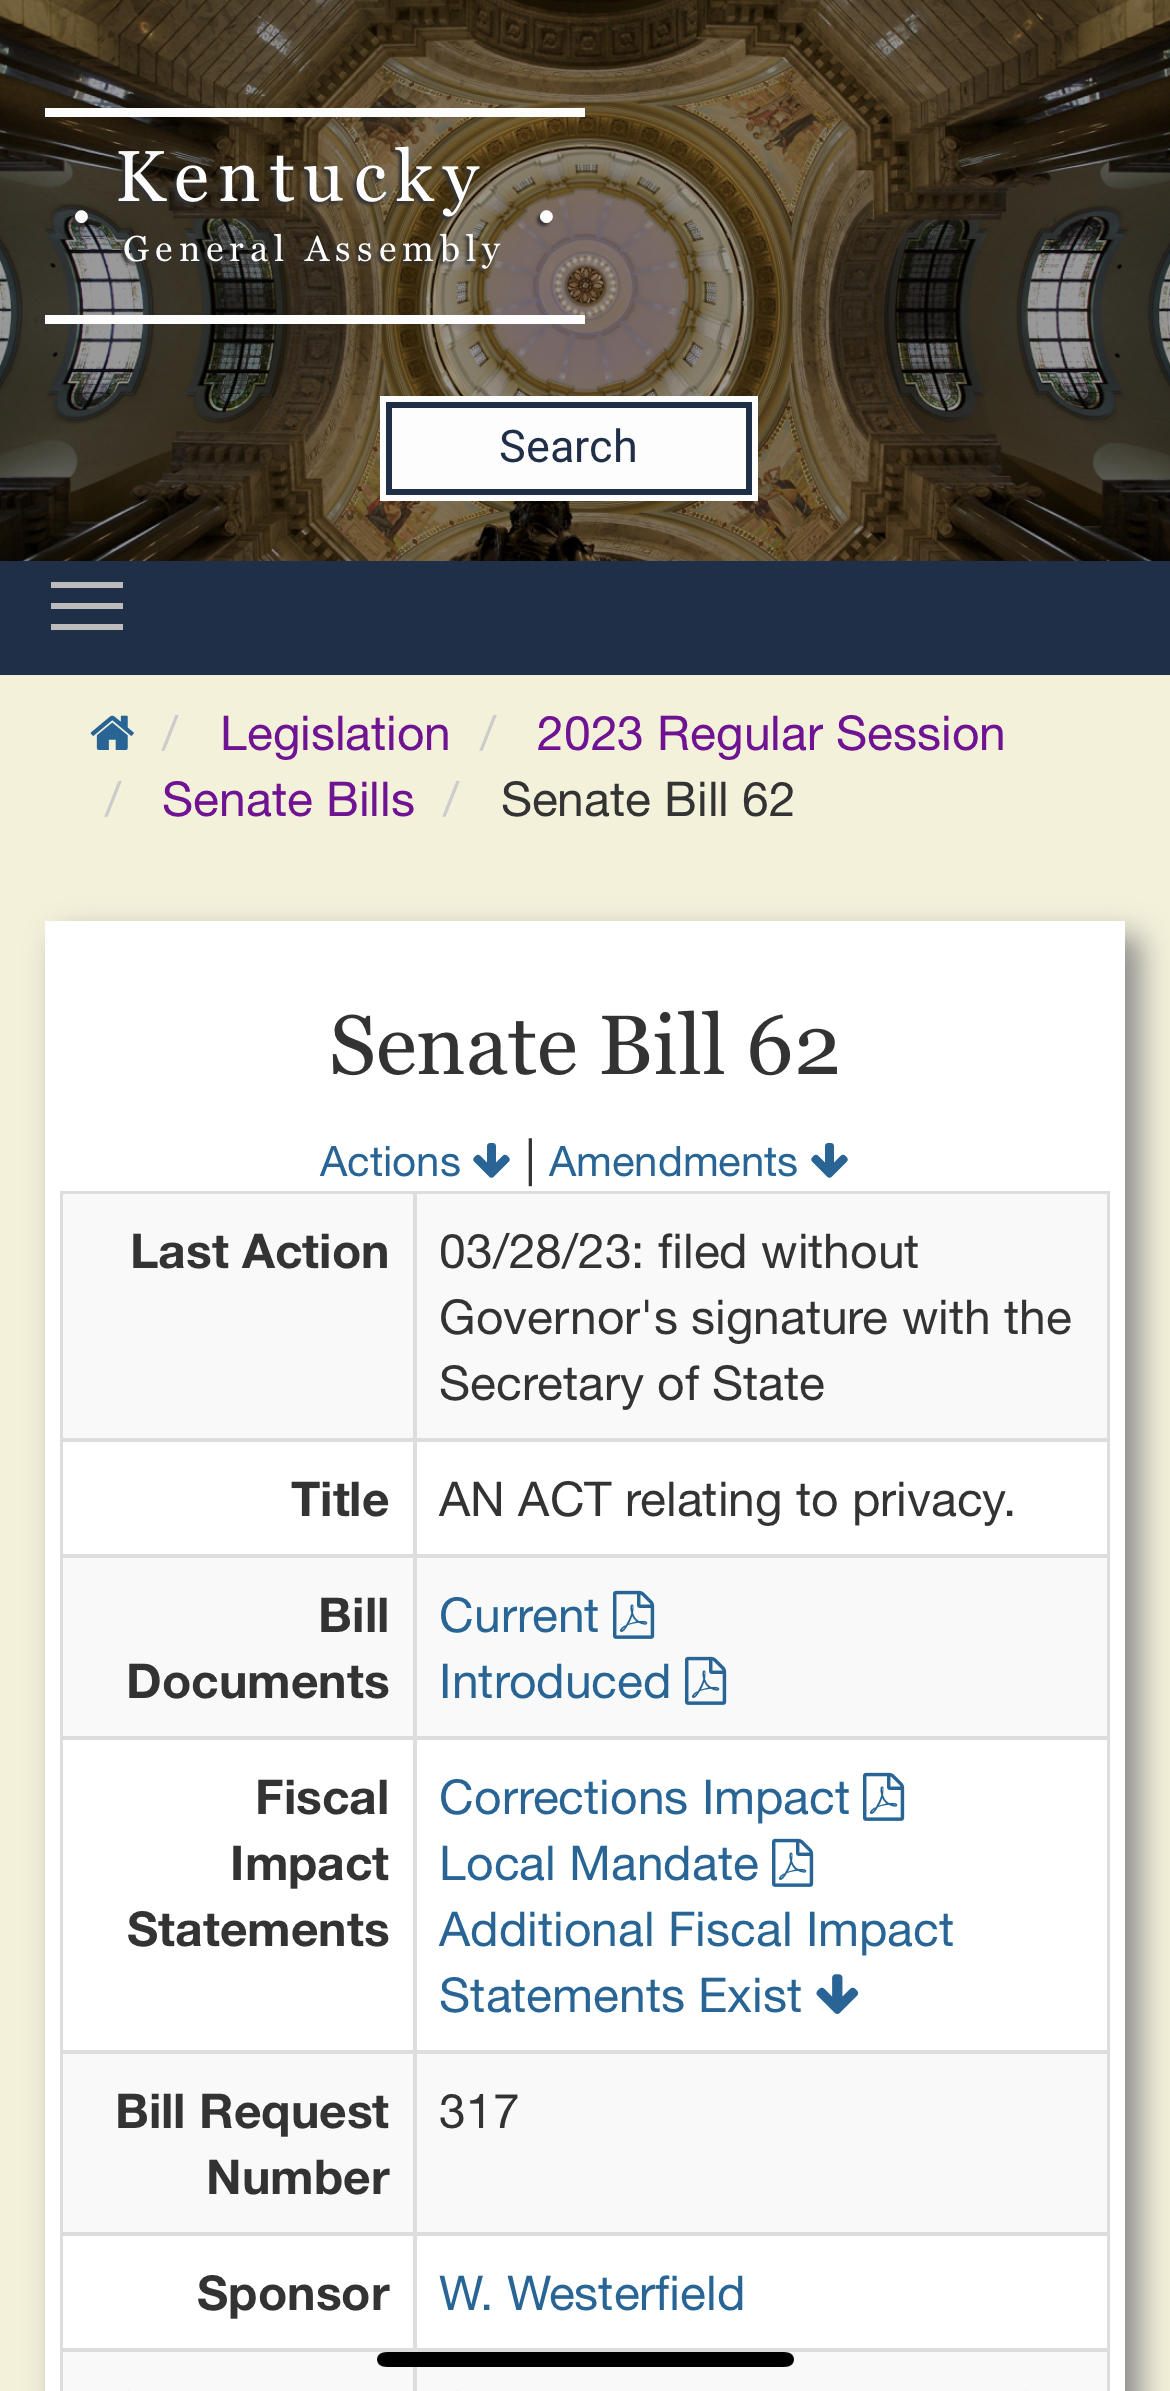 Description of Senate Bill 62